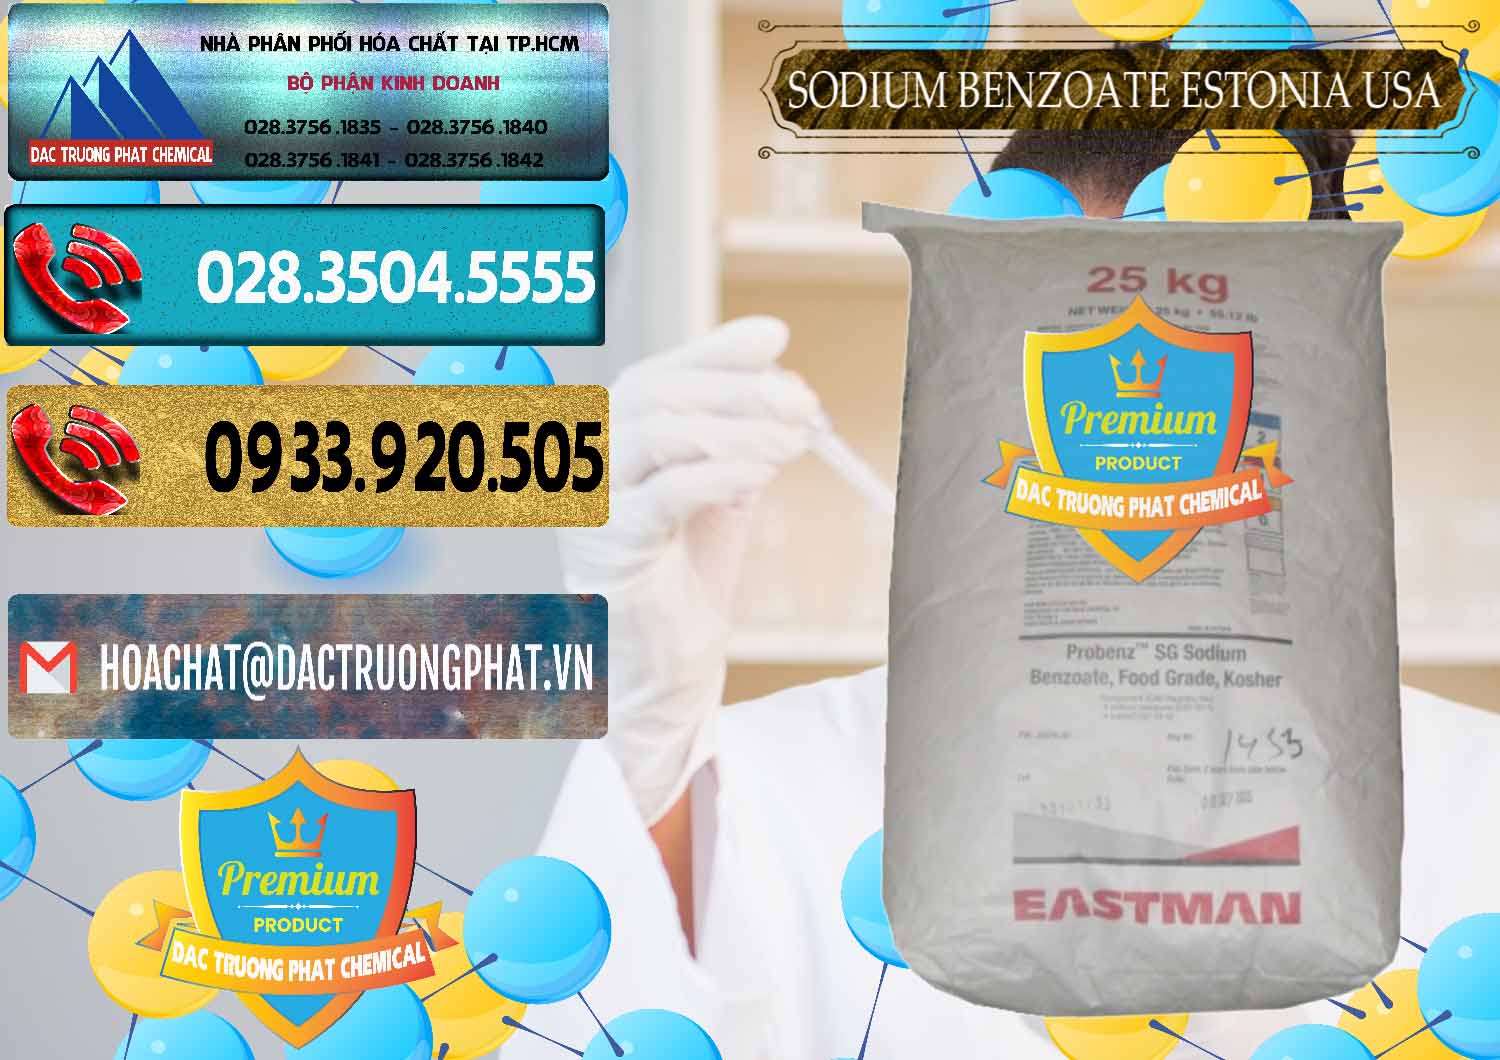 Chuyên kinh doanh _ bán Sodium Benzoate - Mốc Bột Estonia Mỹ USA - 0468 - Cty kinh doanh và phân phối hóa chất tại TP.HCM - hoachatdetnhuom.com